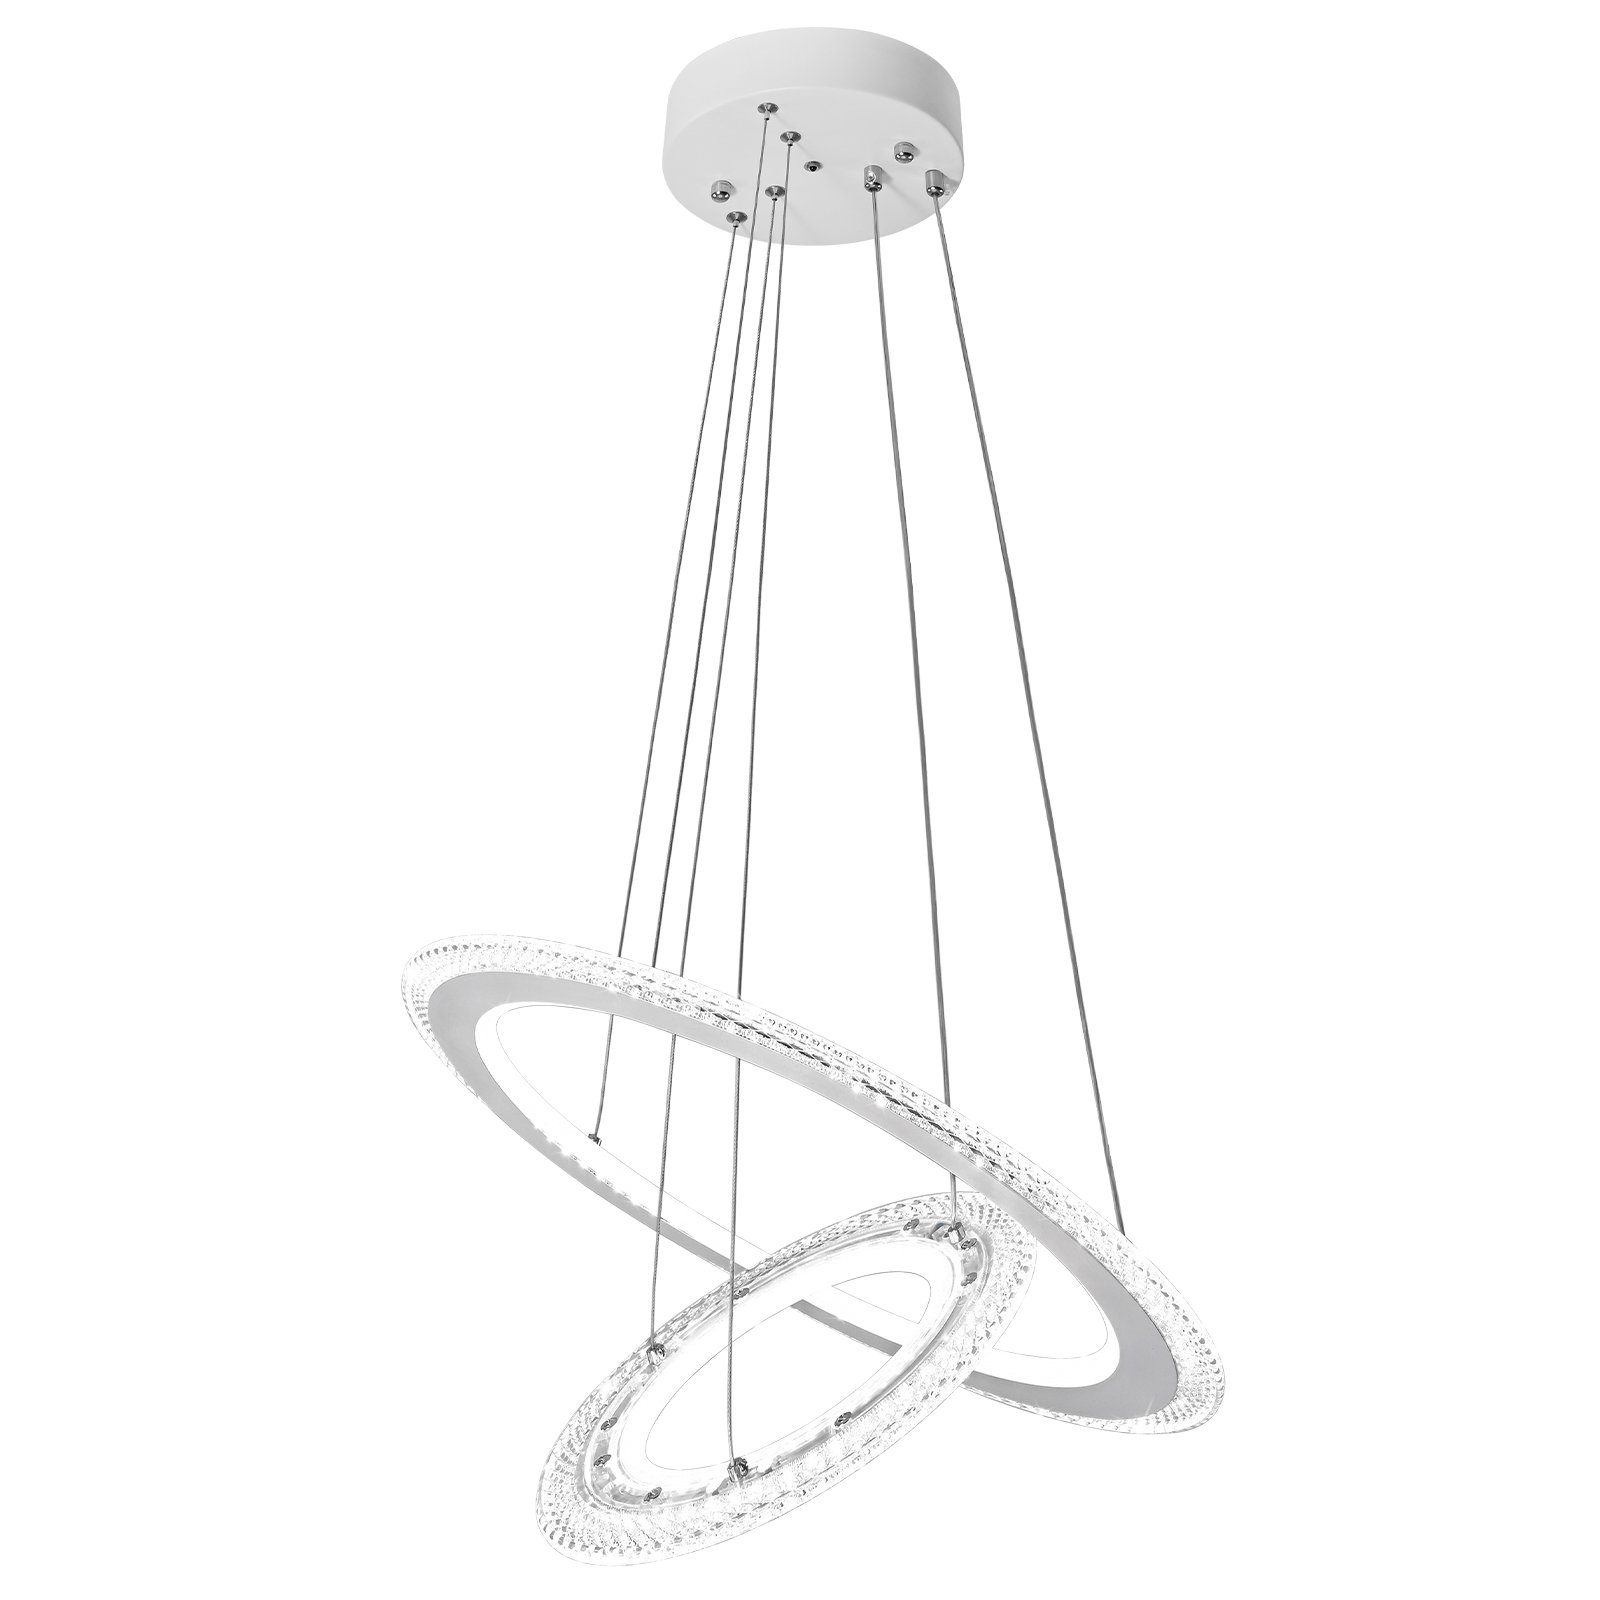 UISEBRT LED Pendelleuchte Hängeleuchte Modern Kristall Kronleuchter Hängelampe Höhenverstellbar, 2/3 Ring Deckenlampe Acryl Leuchte für Wohnzimmer Kaltweiß ohne Fernbedienung | Pendelleuchten